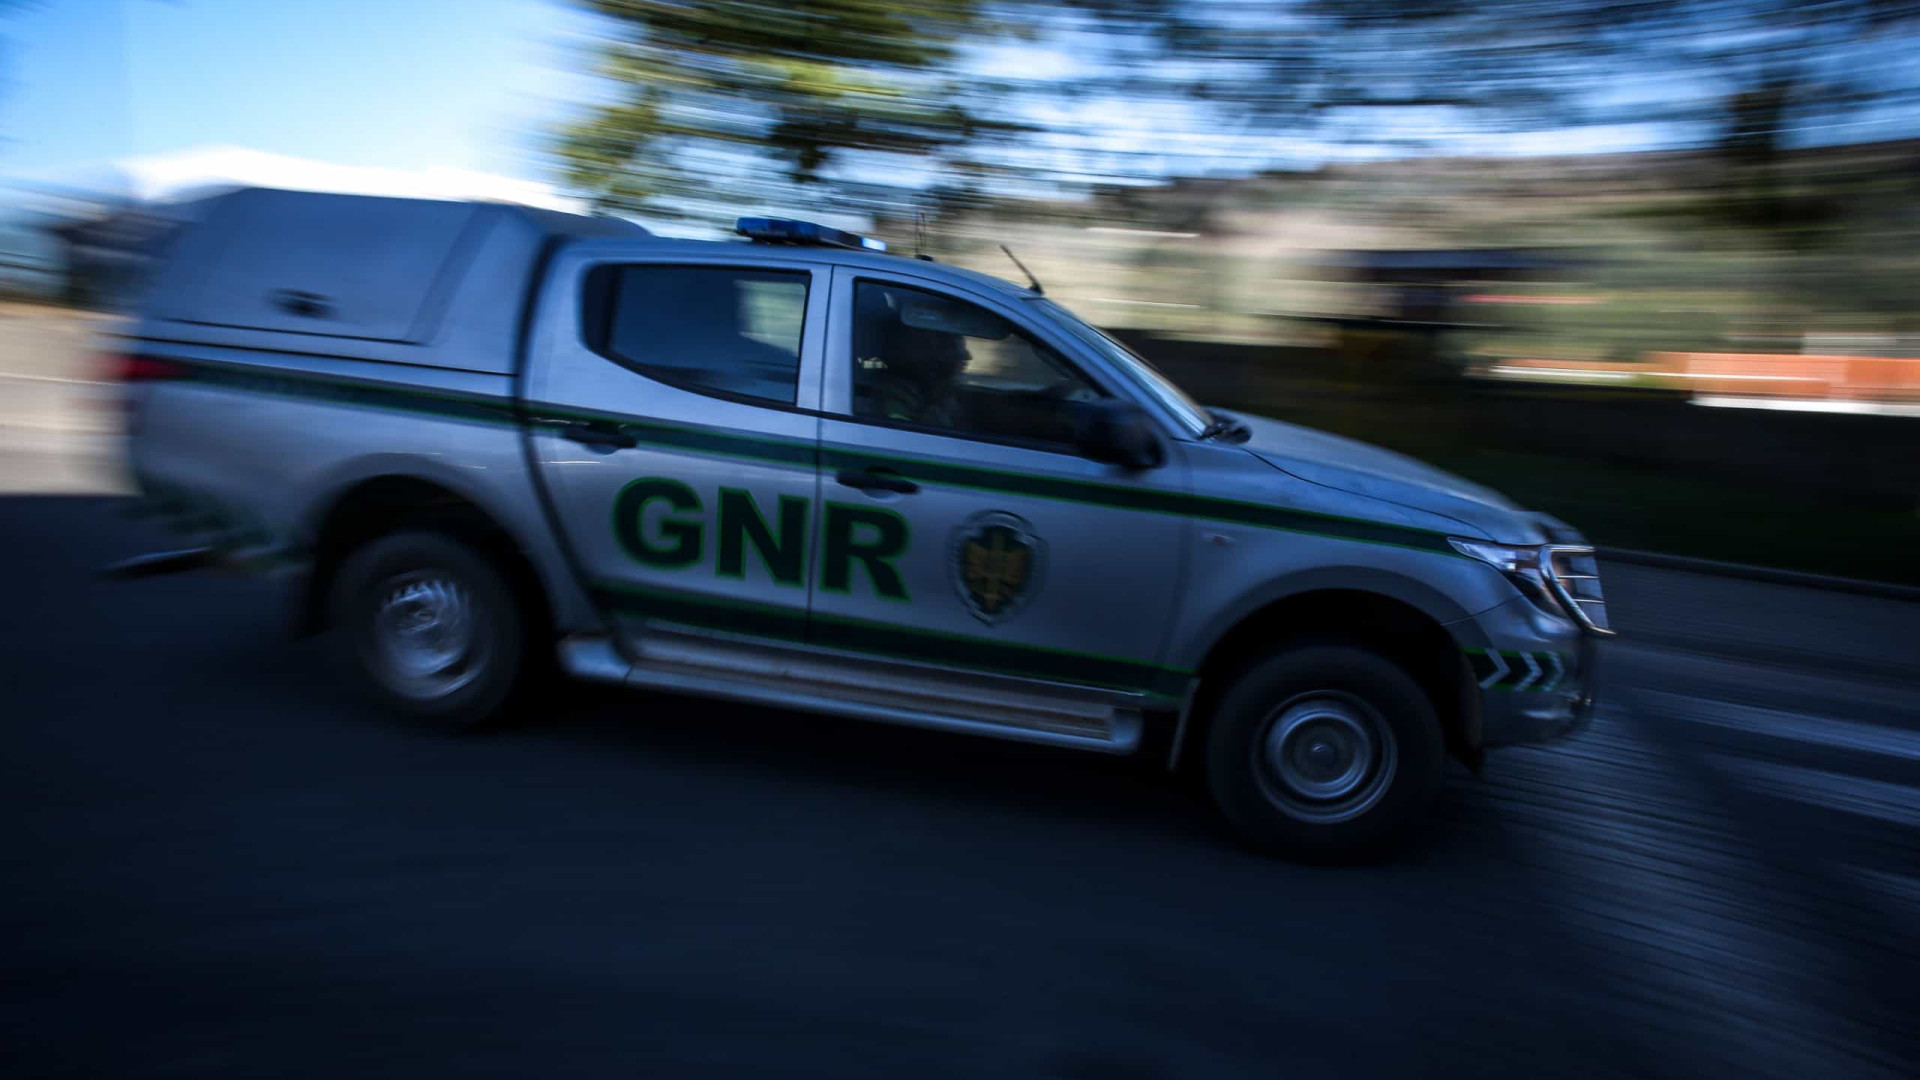 Idosa com Alzheimer desaparecida em Viseu. GNR e bombeiros fazem buscas